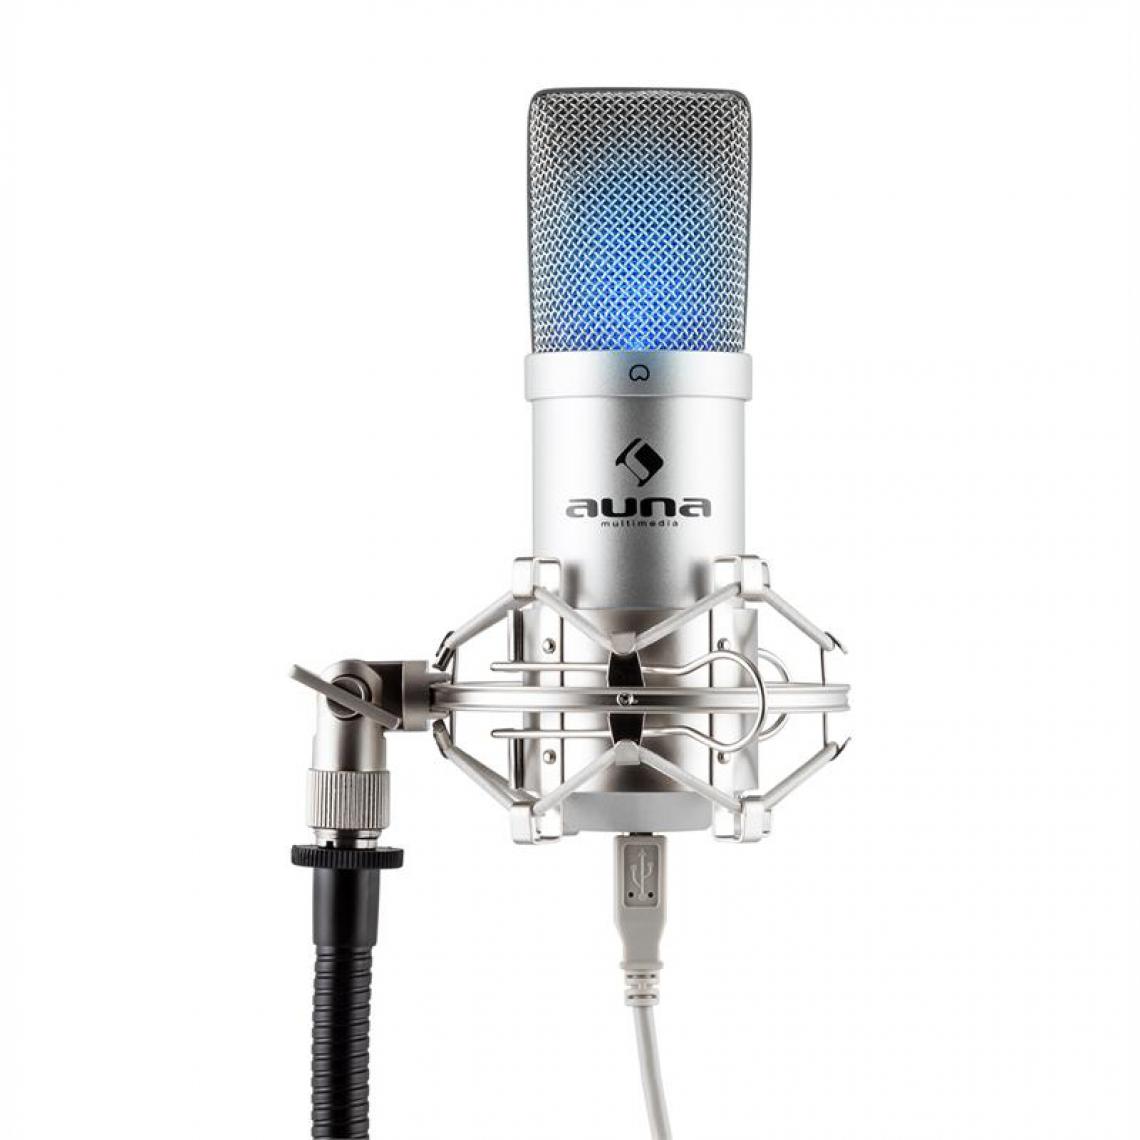 Auna - auna MIC-900S-LED Microphone à condensateur USB Studio -argent Auna - Microphone